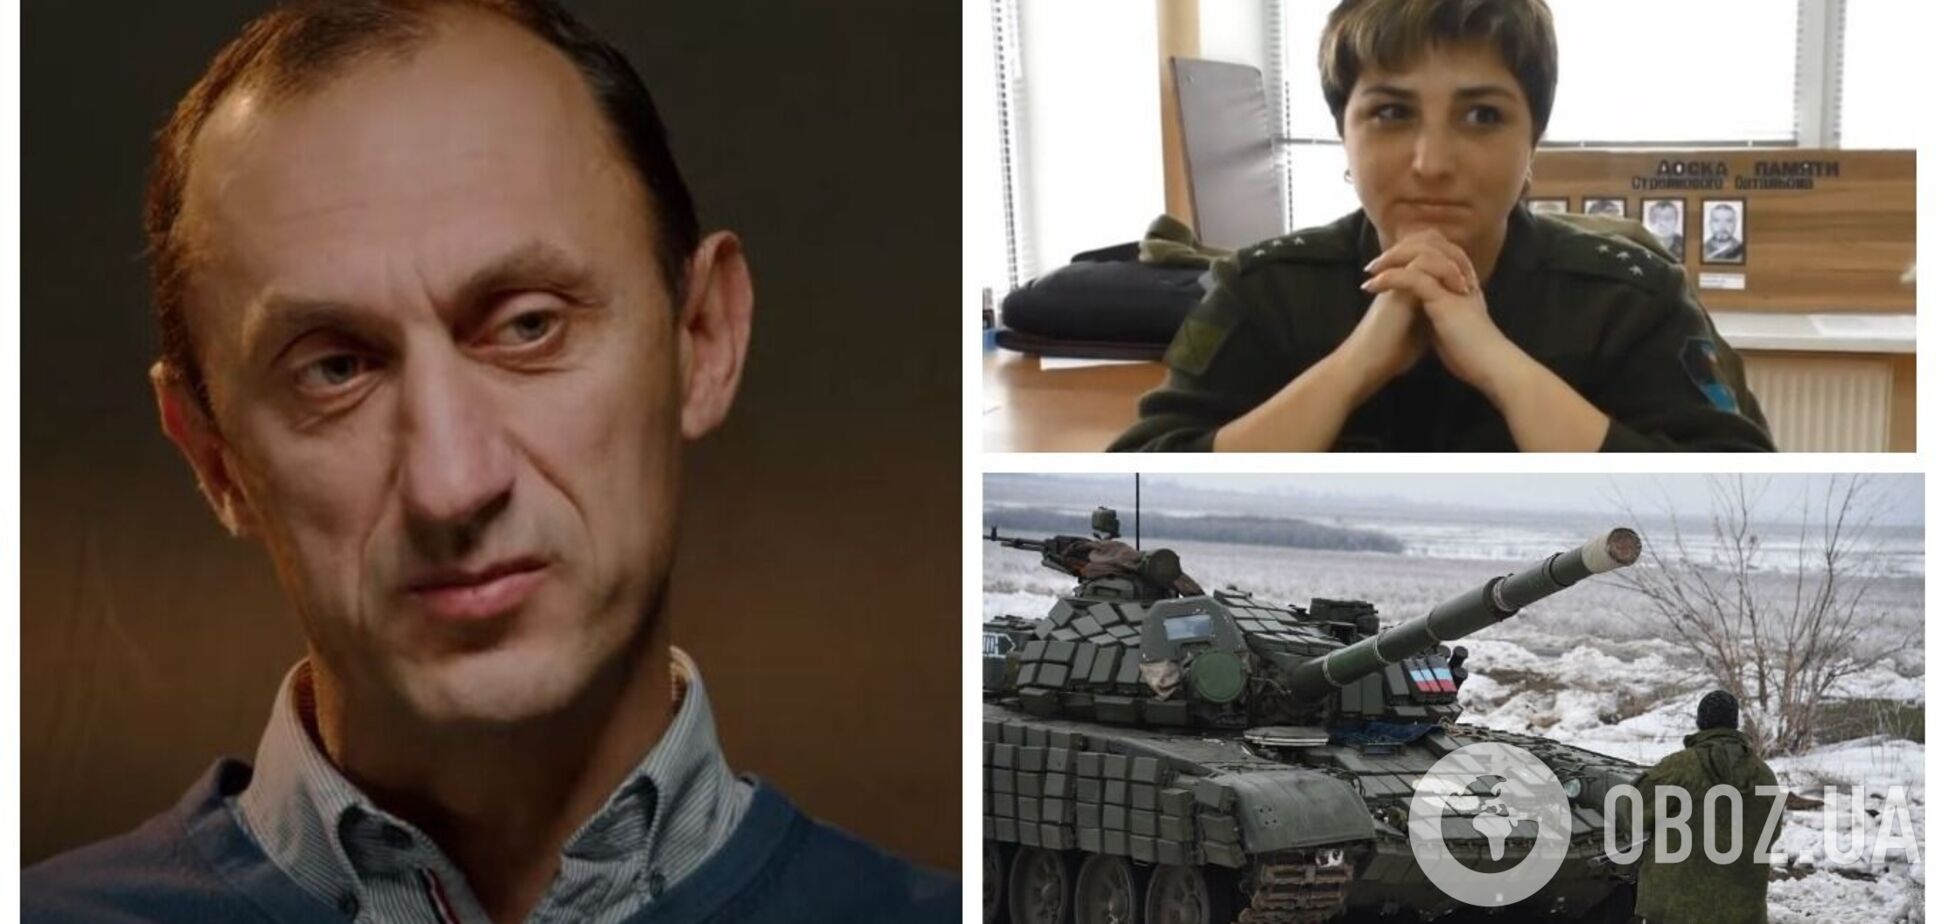 Ексрозвідник ГУР розповів, як танкістку 'ДНР' 'закохали' та виманили з окупованої території. Відео